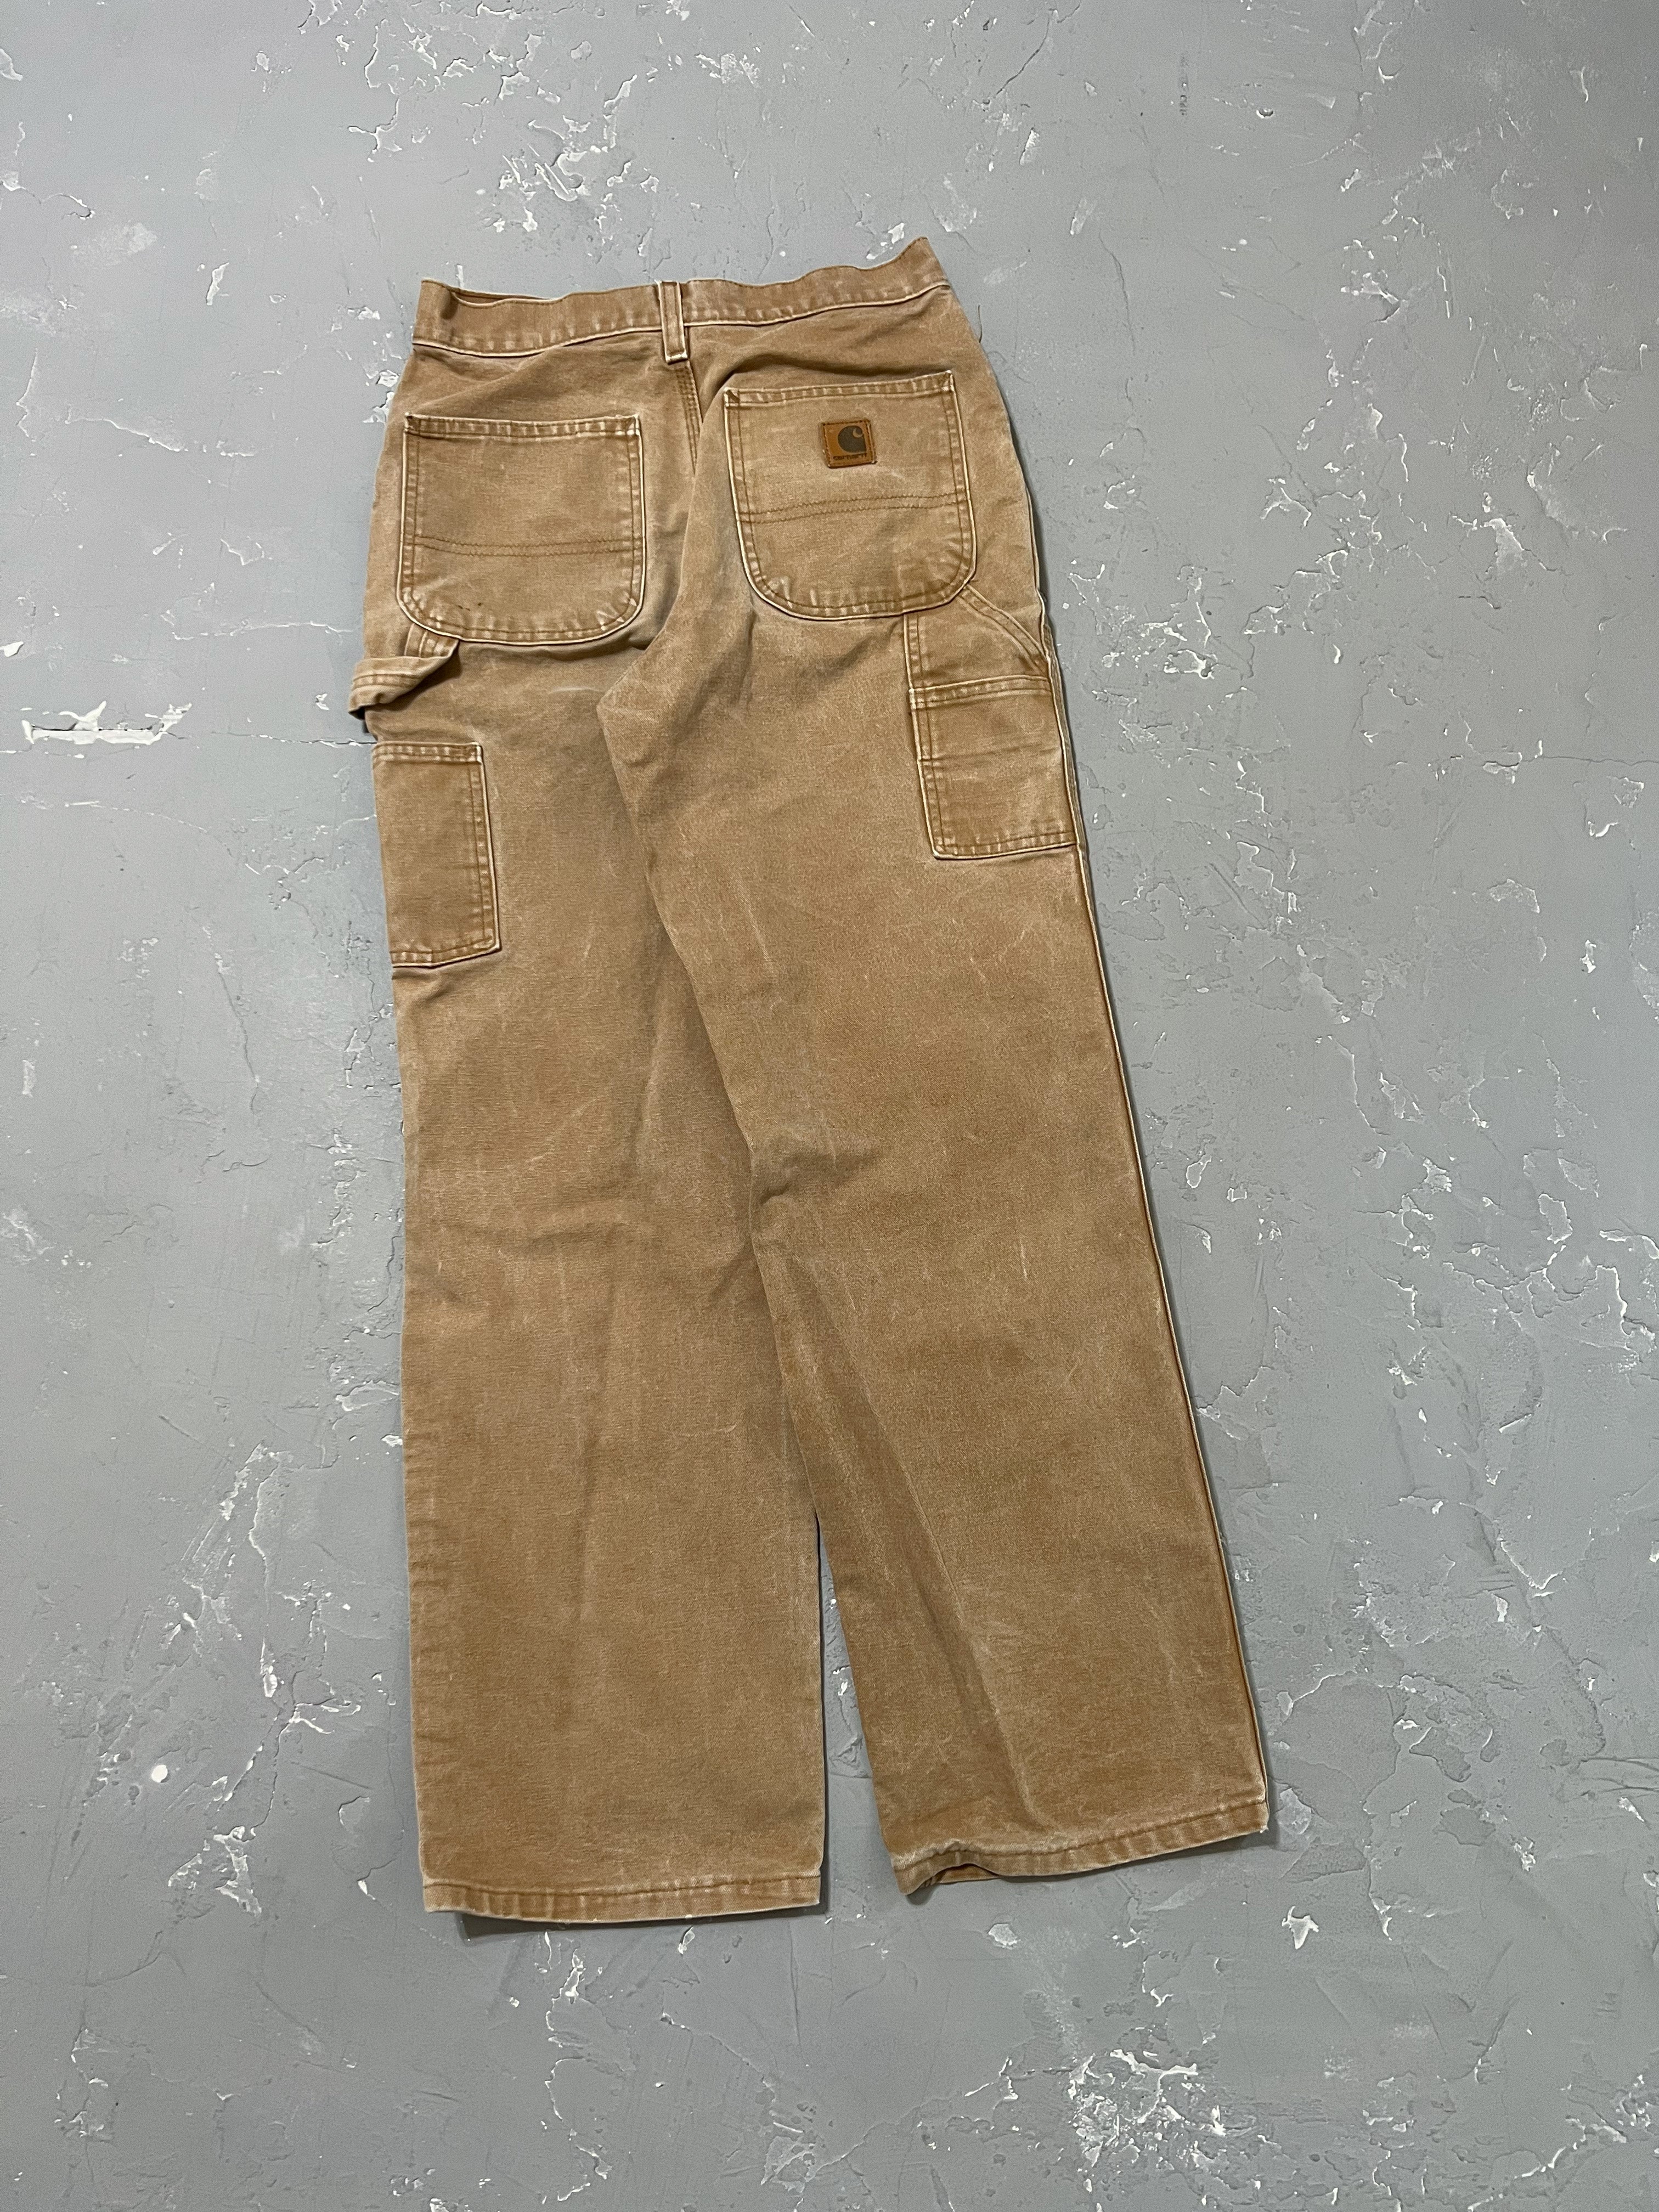 Carhartt Sun Faded Carpenter Pants [27 x 30]